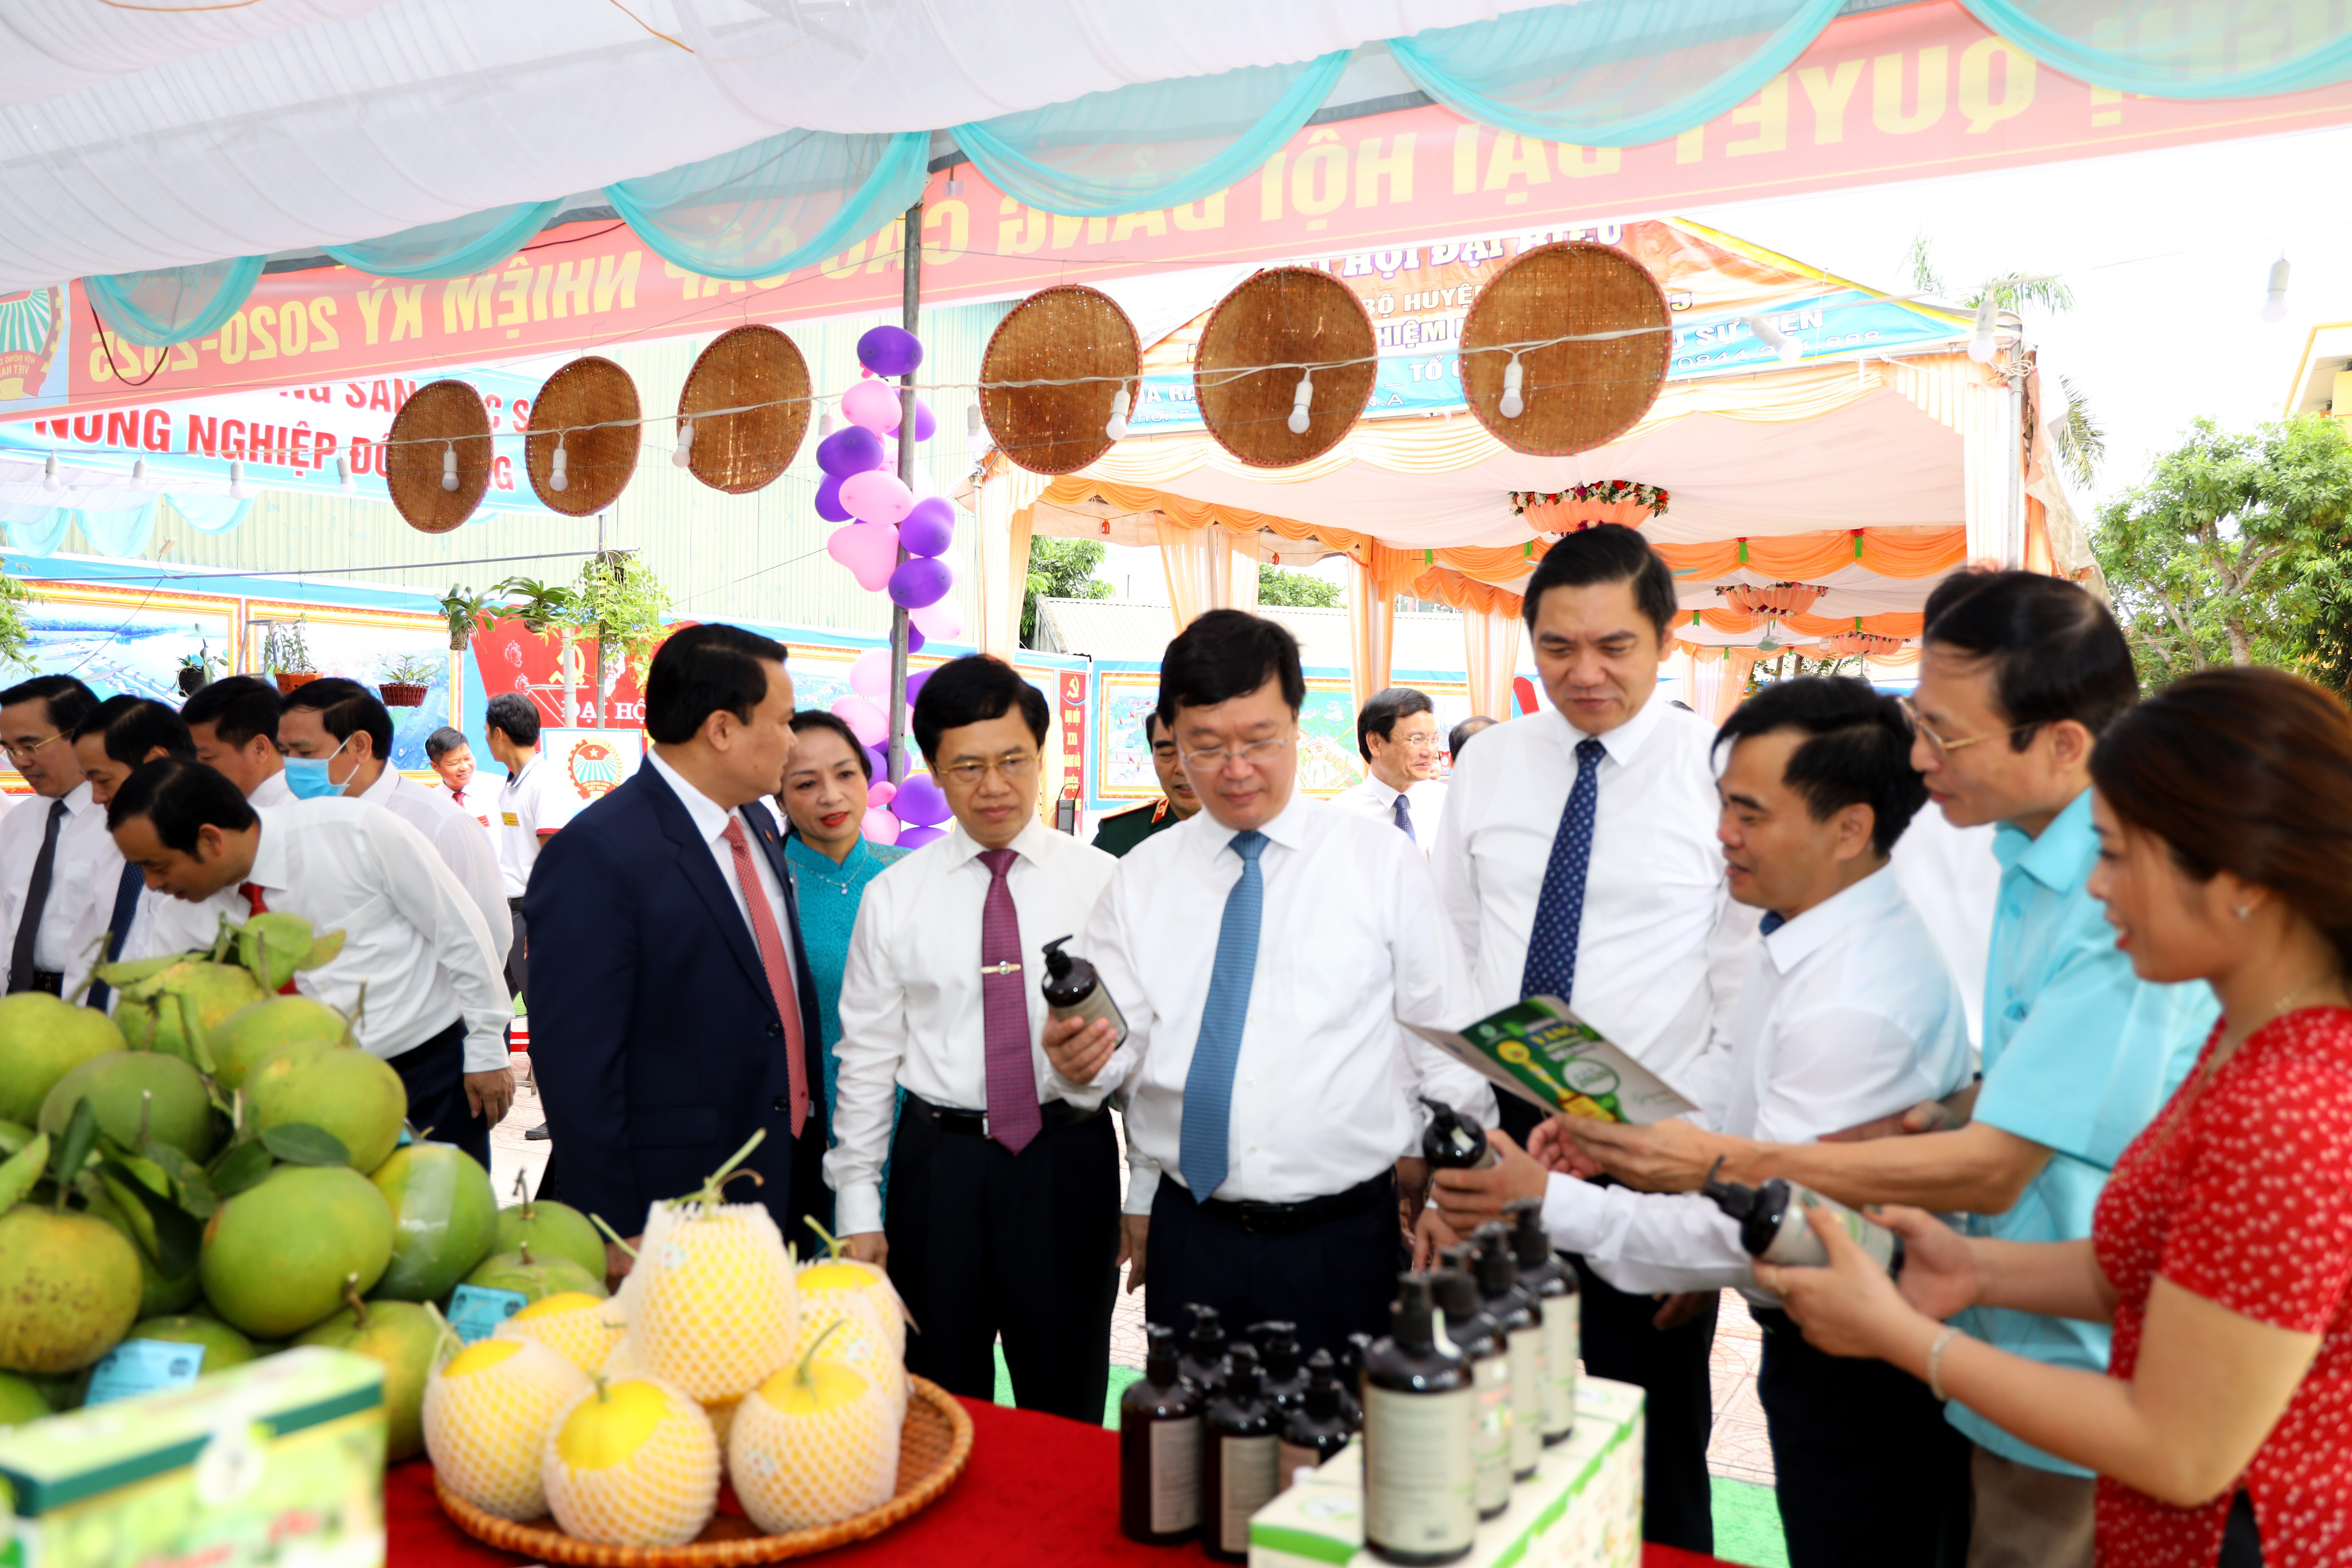 Các đồng chí lãnh đạo tỉnh, cùng các đại biểu tham quan các gian hàng sản phẩm đặc trưng của huyện Đô Lương tại Đại hội. Ảnh Nguyên Nguyên